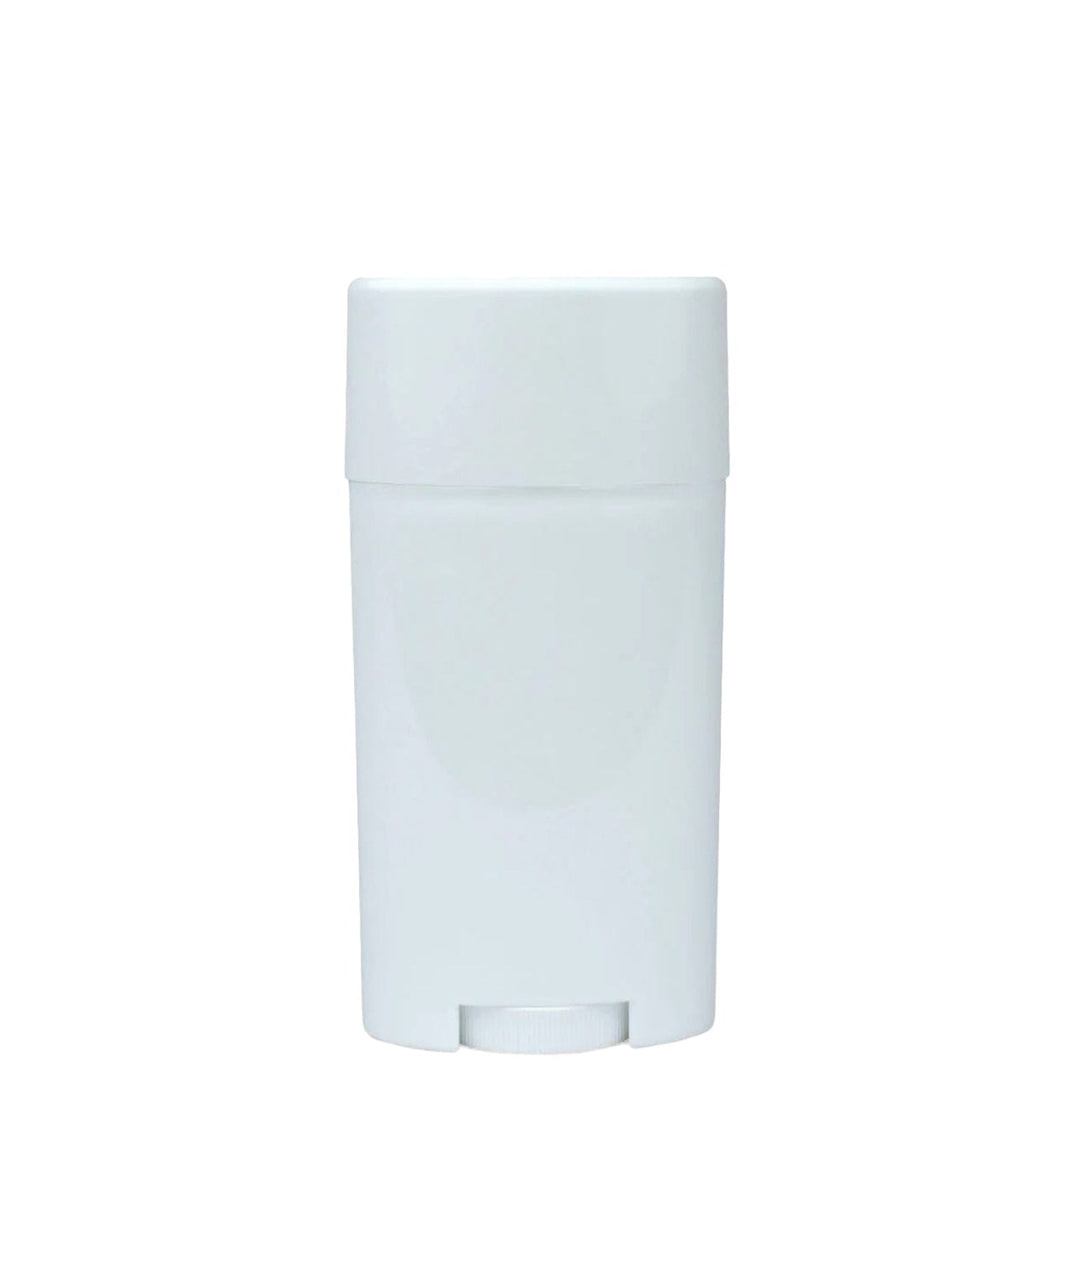 2.65 oz White PET Plastic Deodorant Container Plastic Storage Bottles Your Oil Tools 